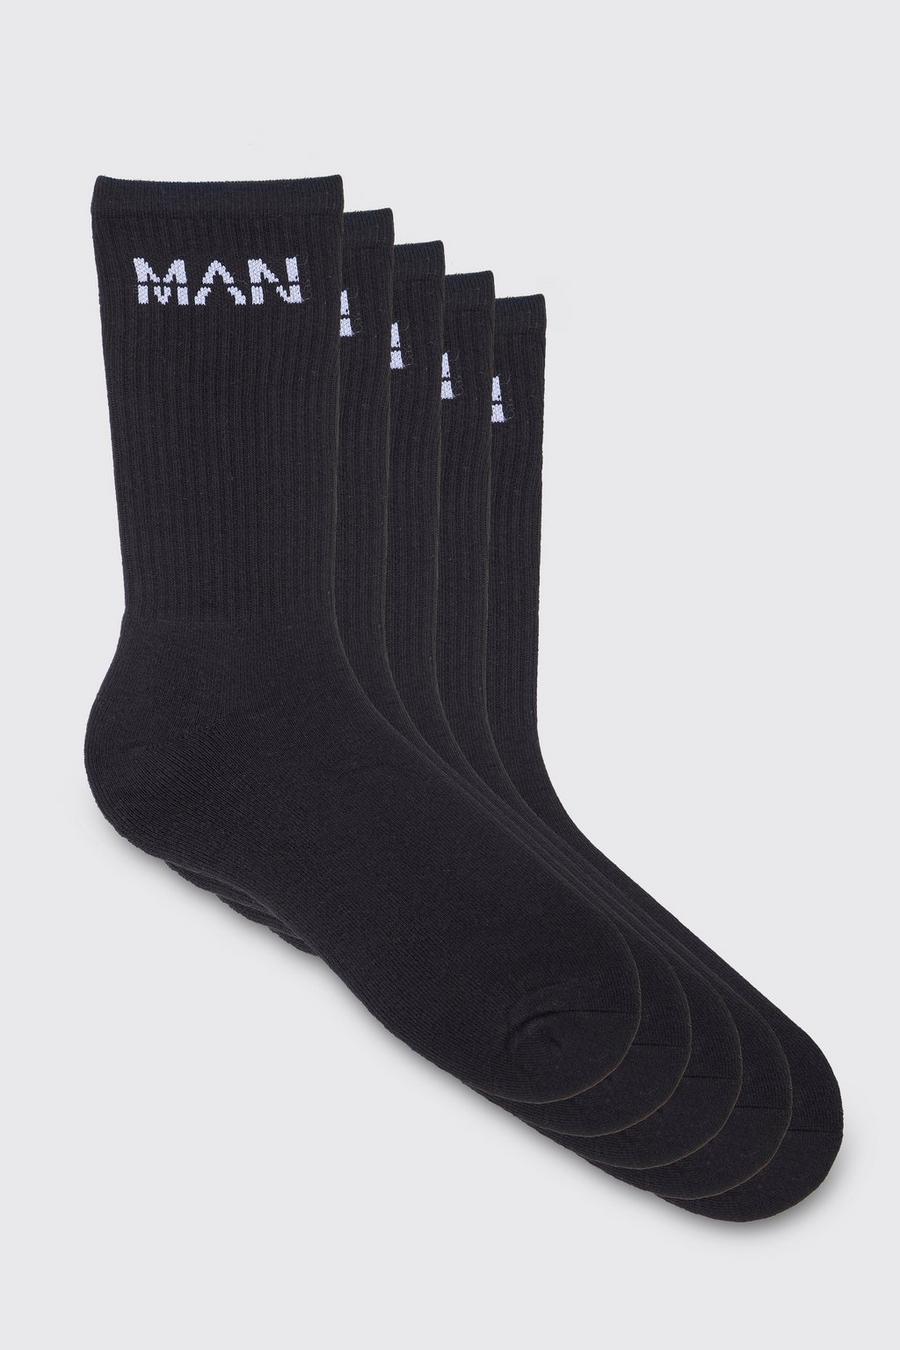 Lot de 5 paires de chaussettes - MAN, Black